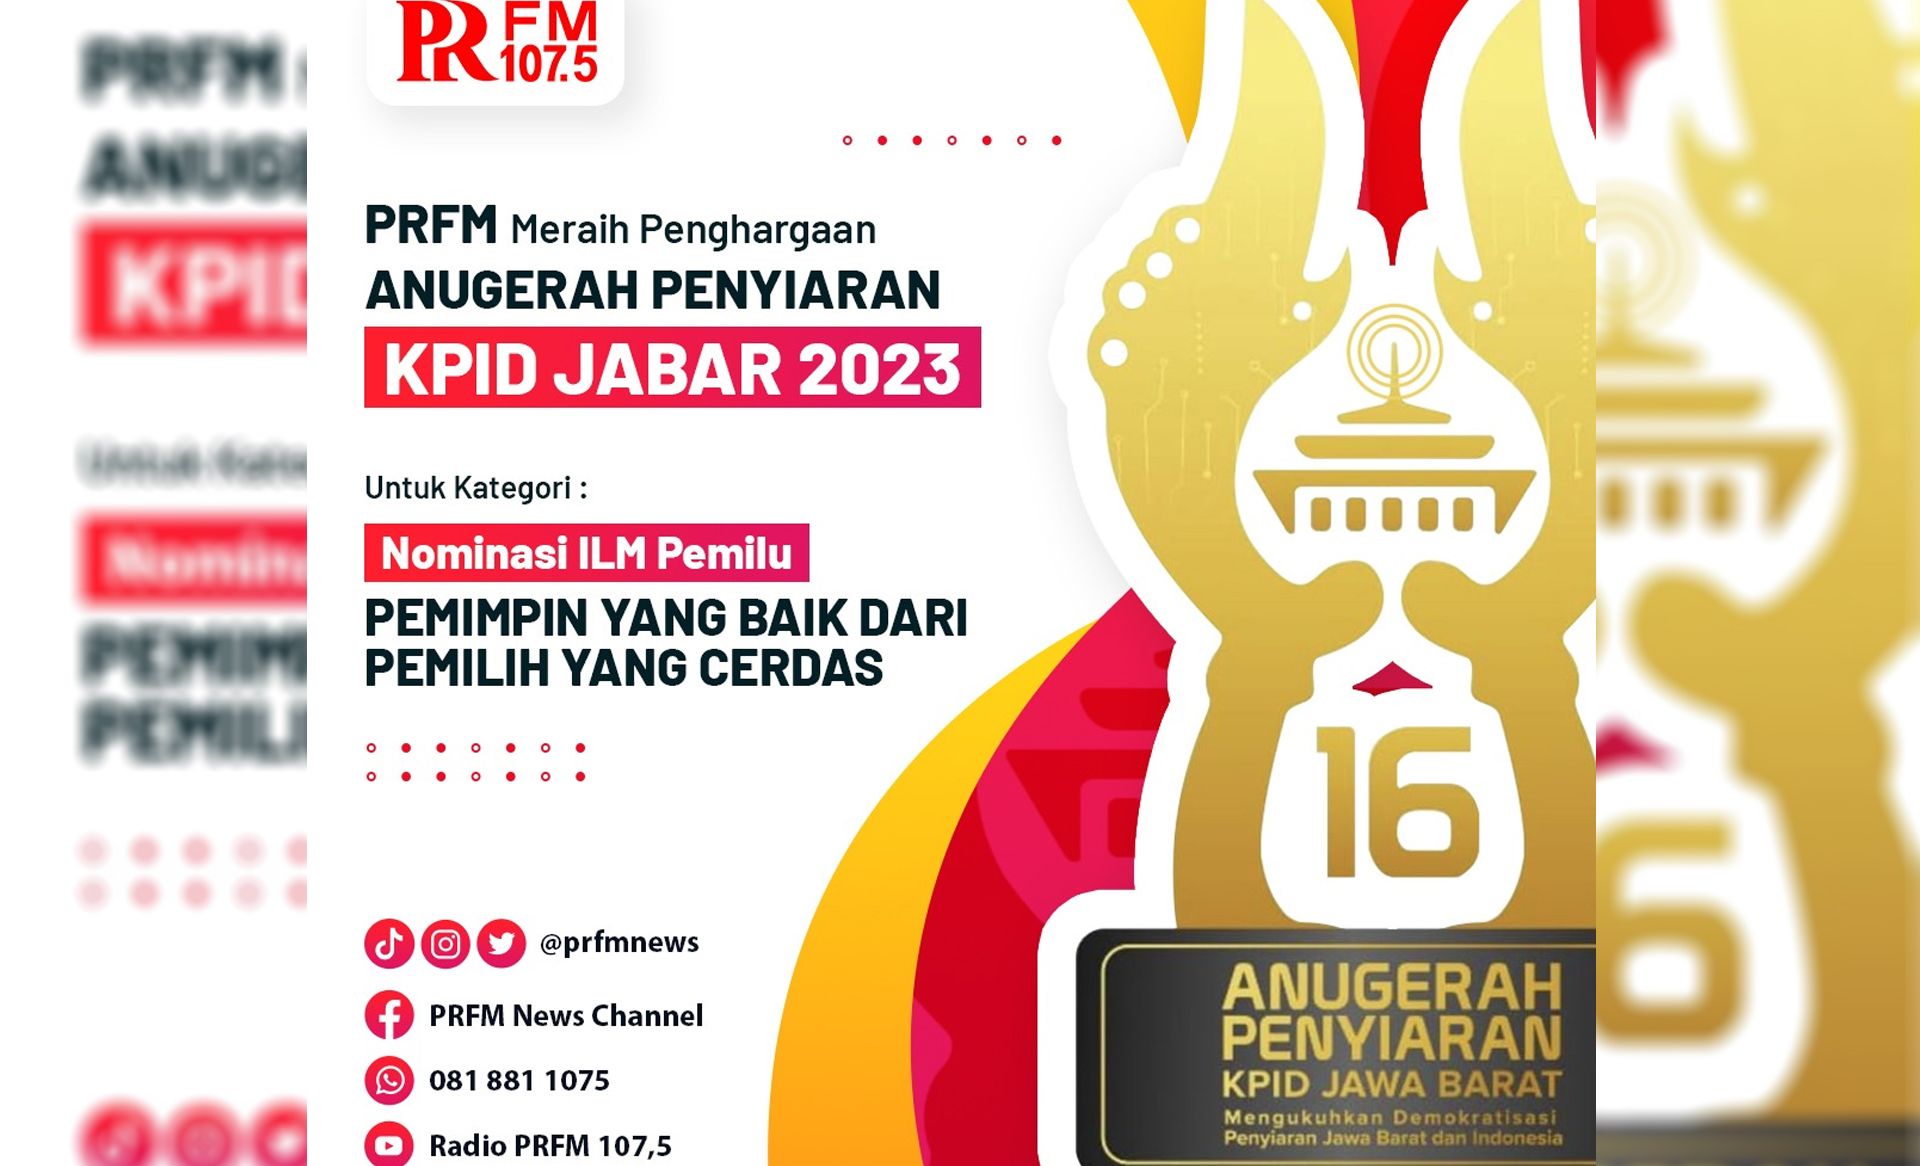 PRFM raih penghargaan Anugerah Penyiaran KPID Jabar 2023 Nominasi ILM Pemilu.